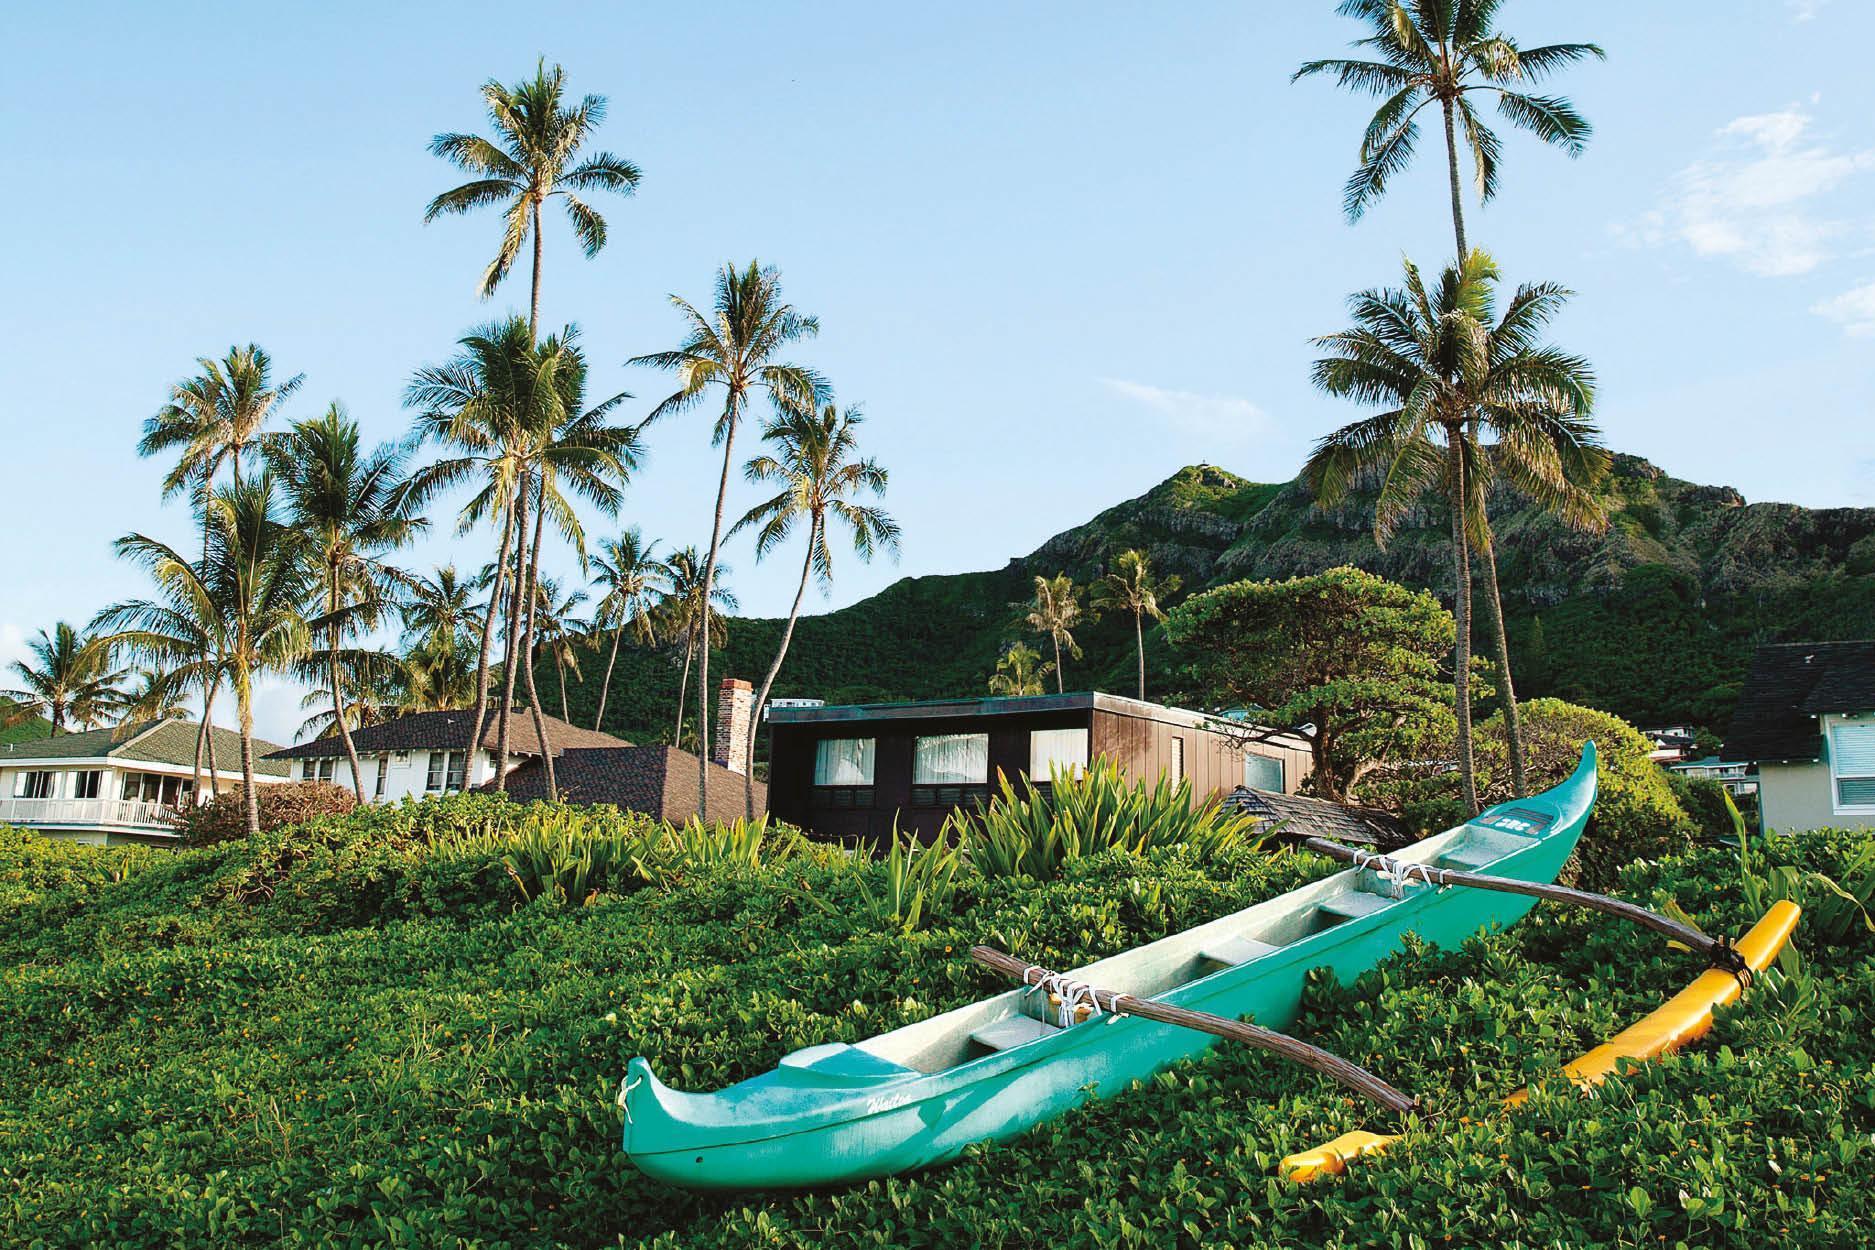 Head to Hawaii for Some Laid Back Modern Aloha